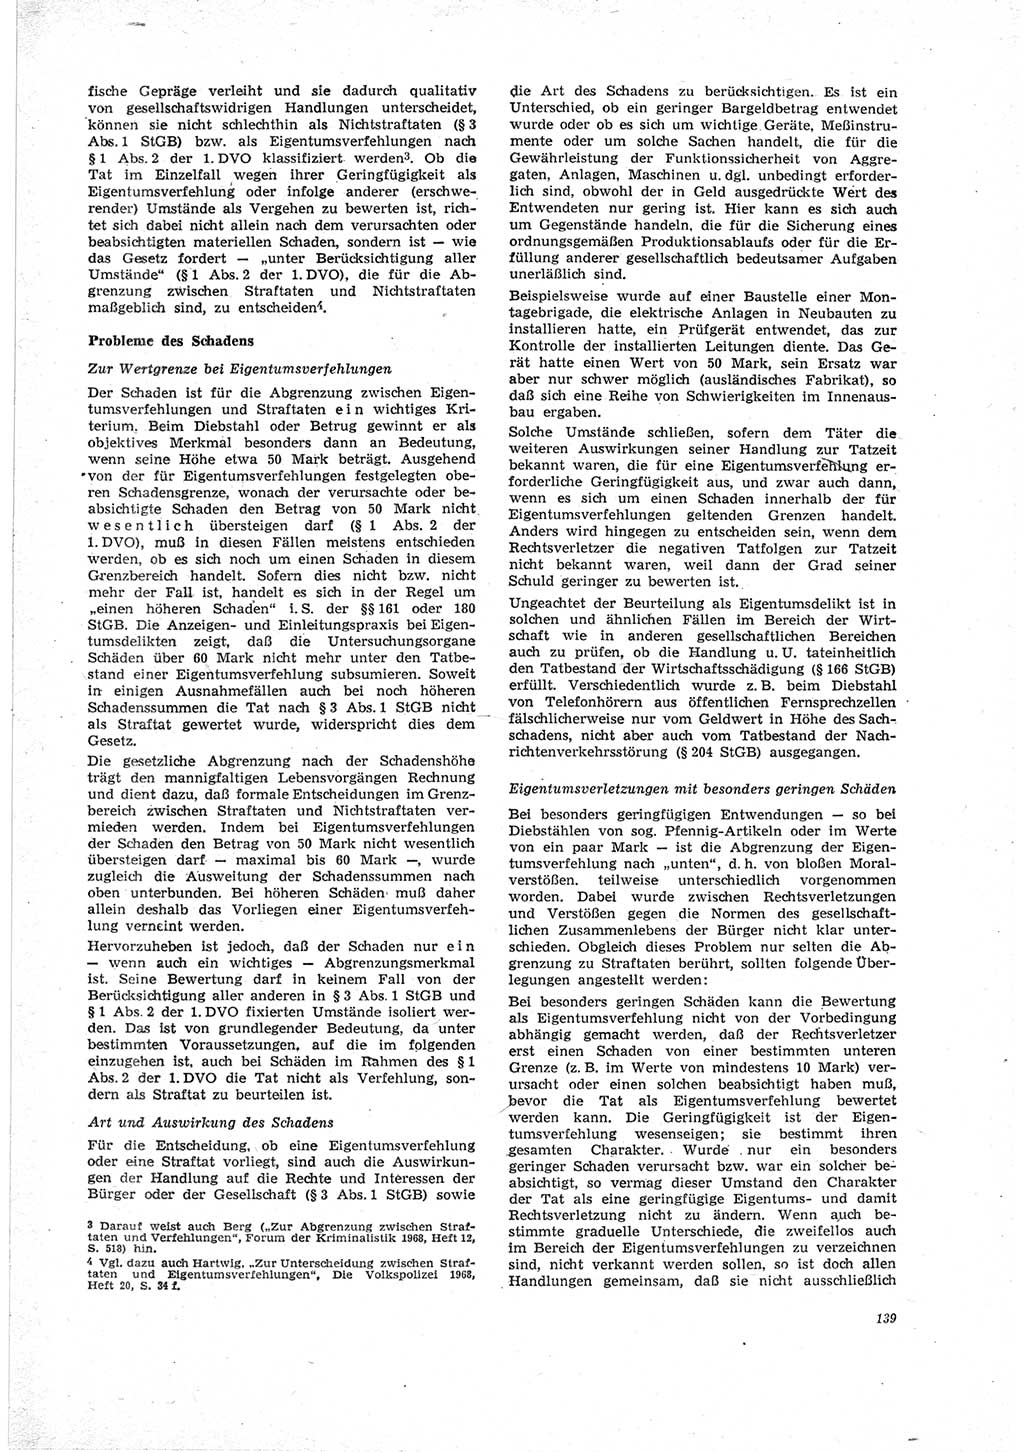 Neue Justiz (NJ), Zeitschrift für Recht und Rechtswissenschaft [Deutsche Demokratische Republik (DDR)], 23. Jahrgang 1969, Seite 139 (NJ DDR 1969, S. 139)